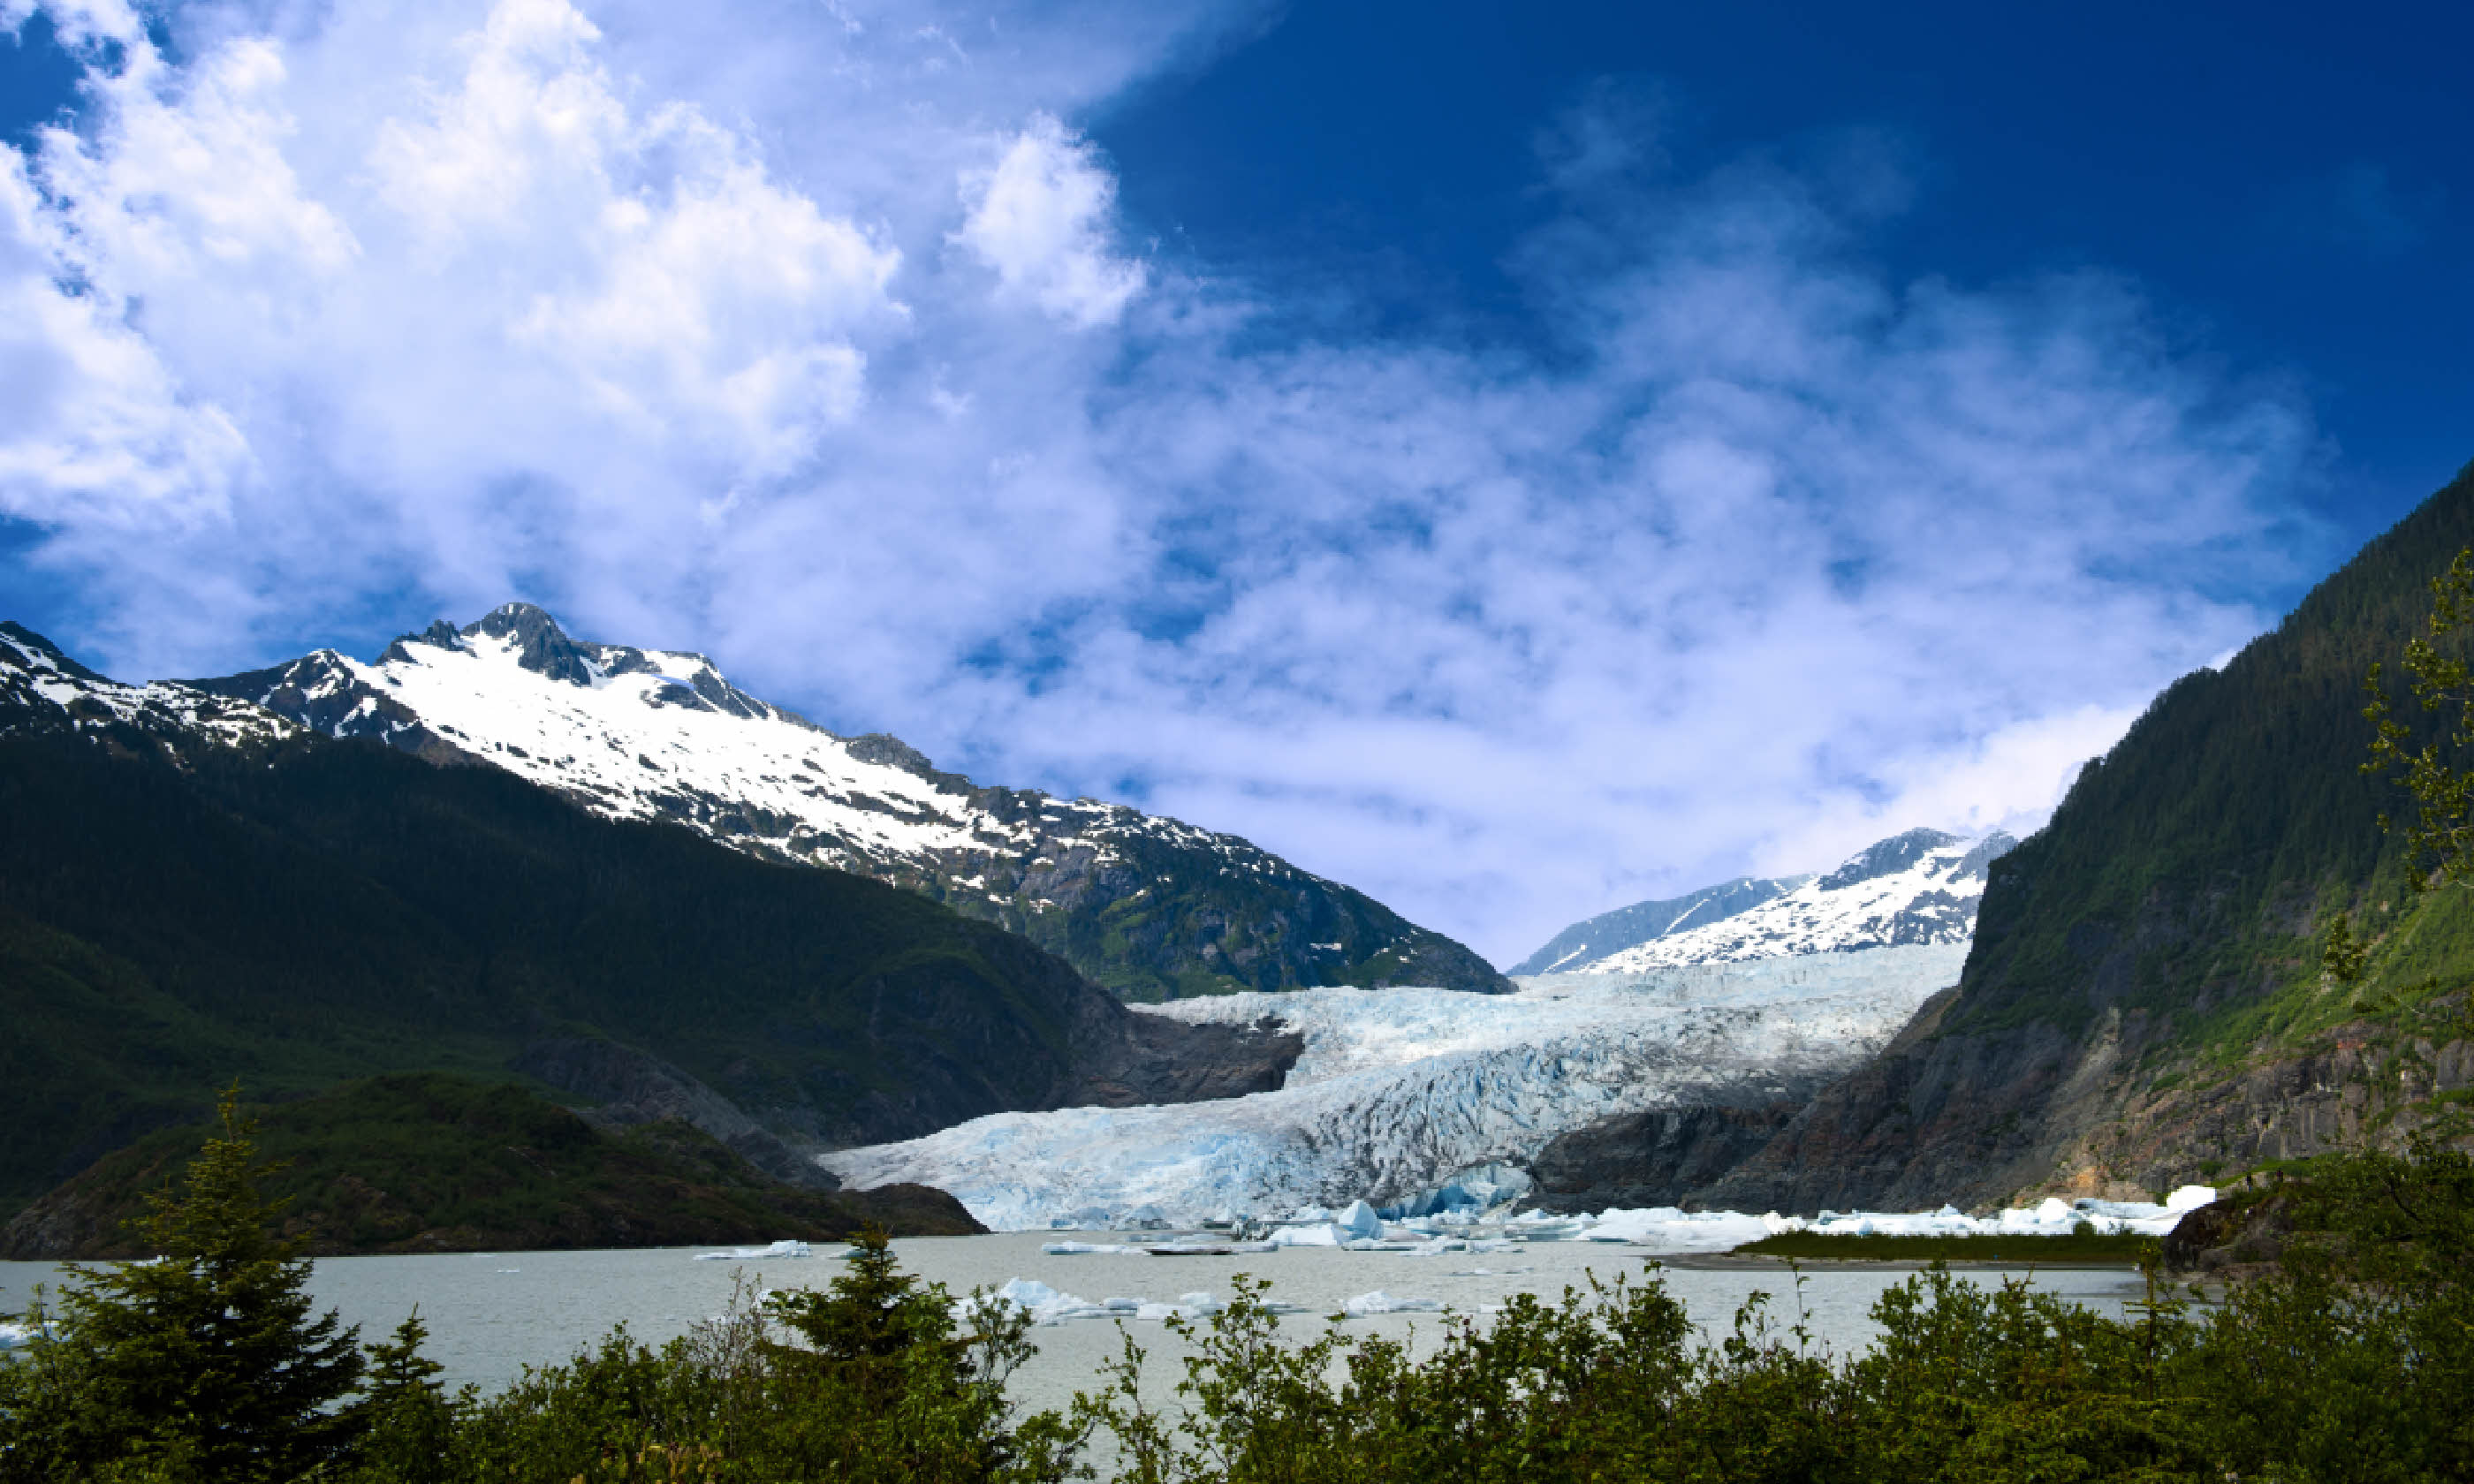 Mendenhall Glacier in Juneau, Alaska (Shutterstock)